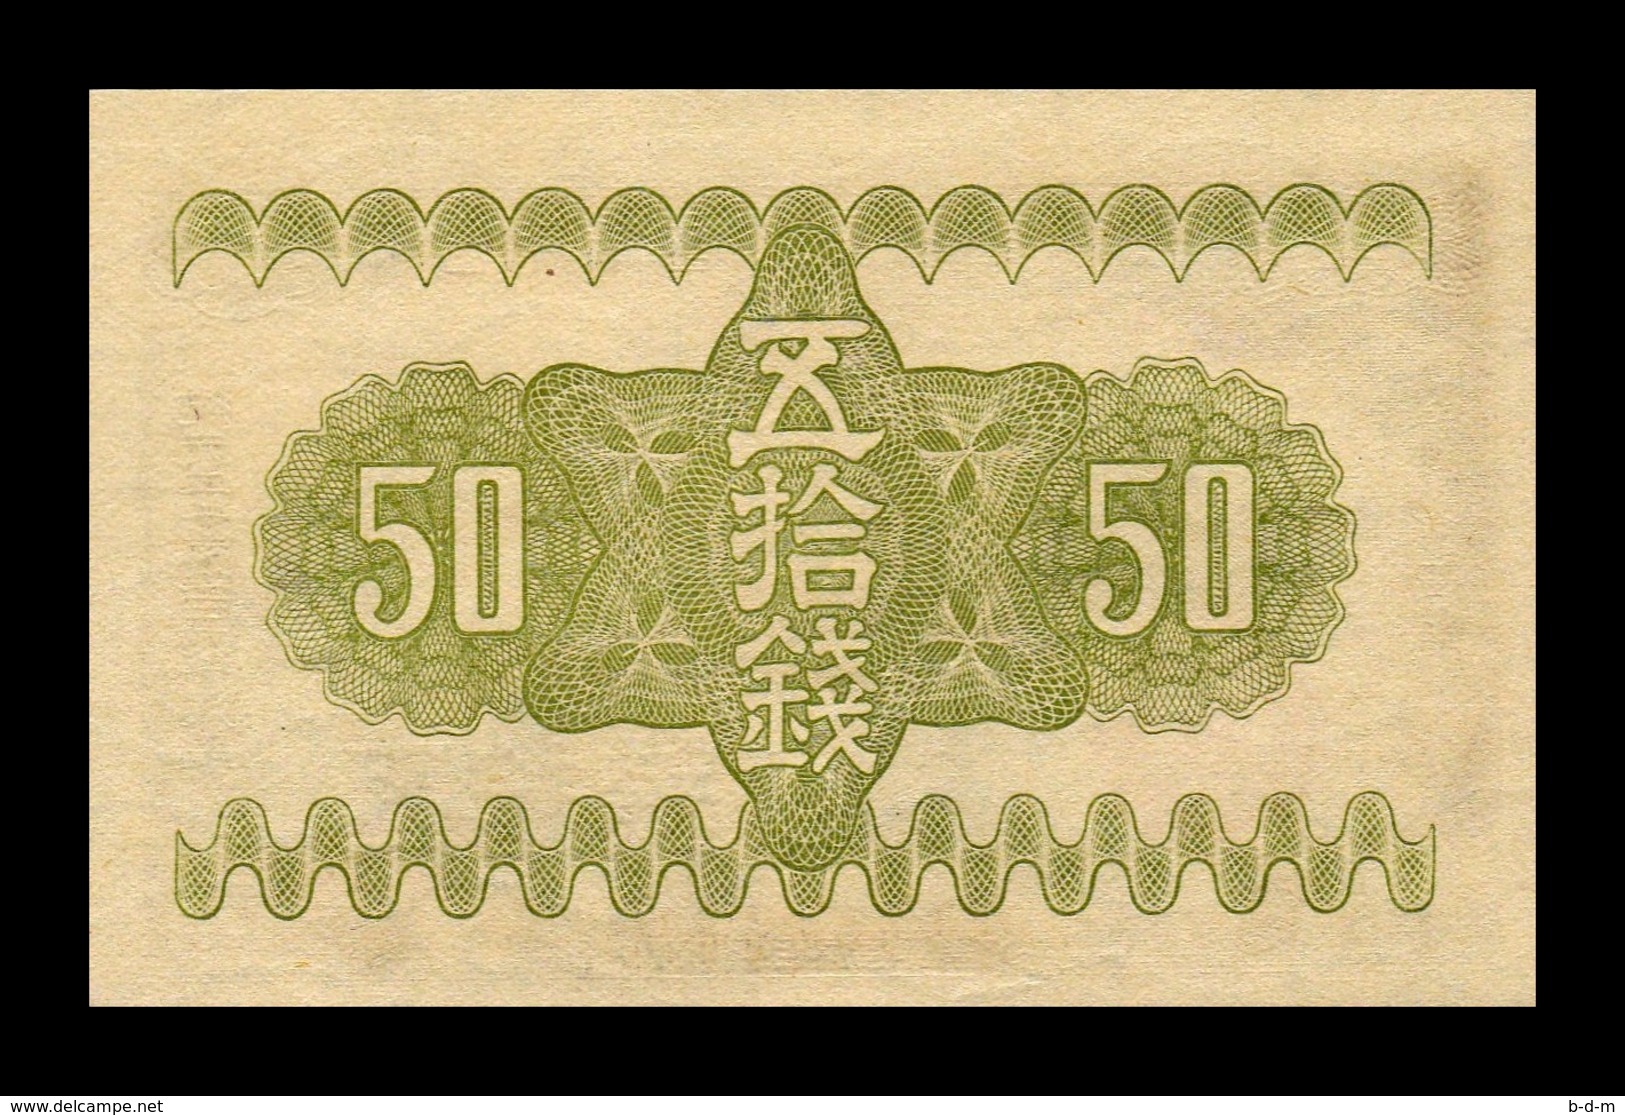 Japon Japan 50 Sen 1938 Pick 58 SC UNC - Japan